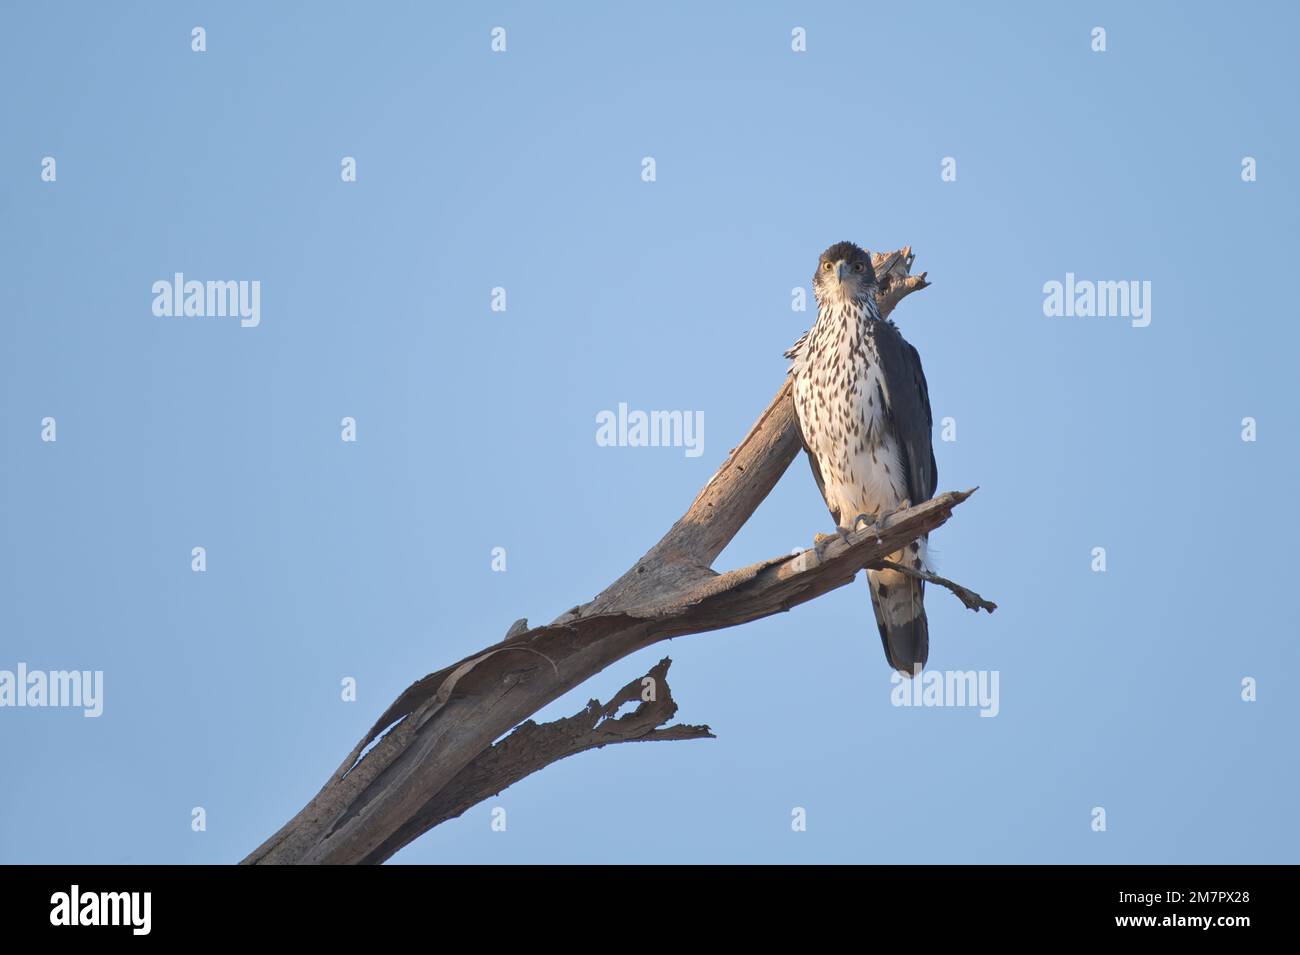 Faucon-aigle africain (Hieraaetus spilogaster) perché sur un arbre mort dans la réserve nationale de Samburu, Kenya Banque D'Images